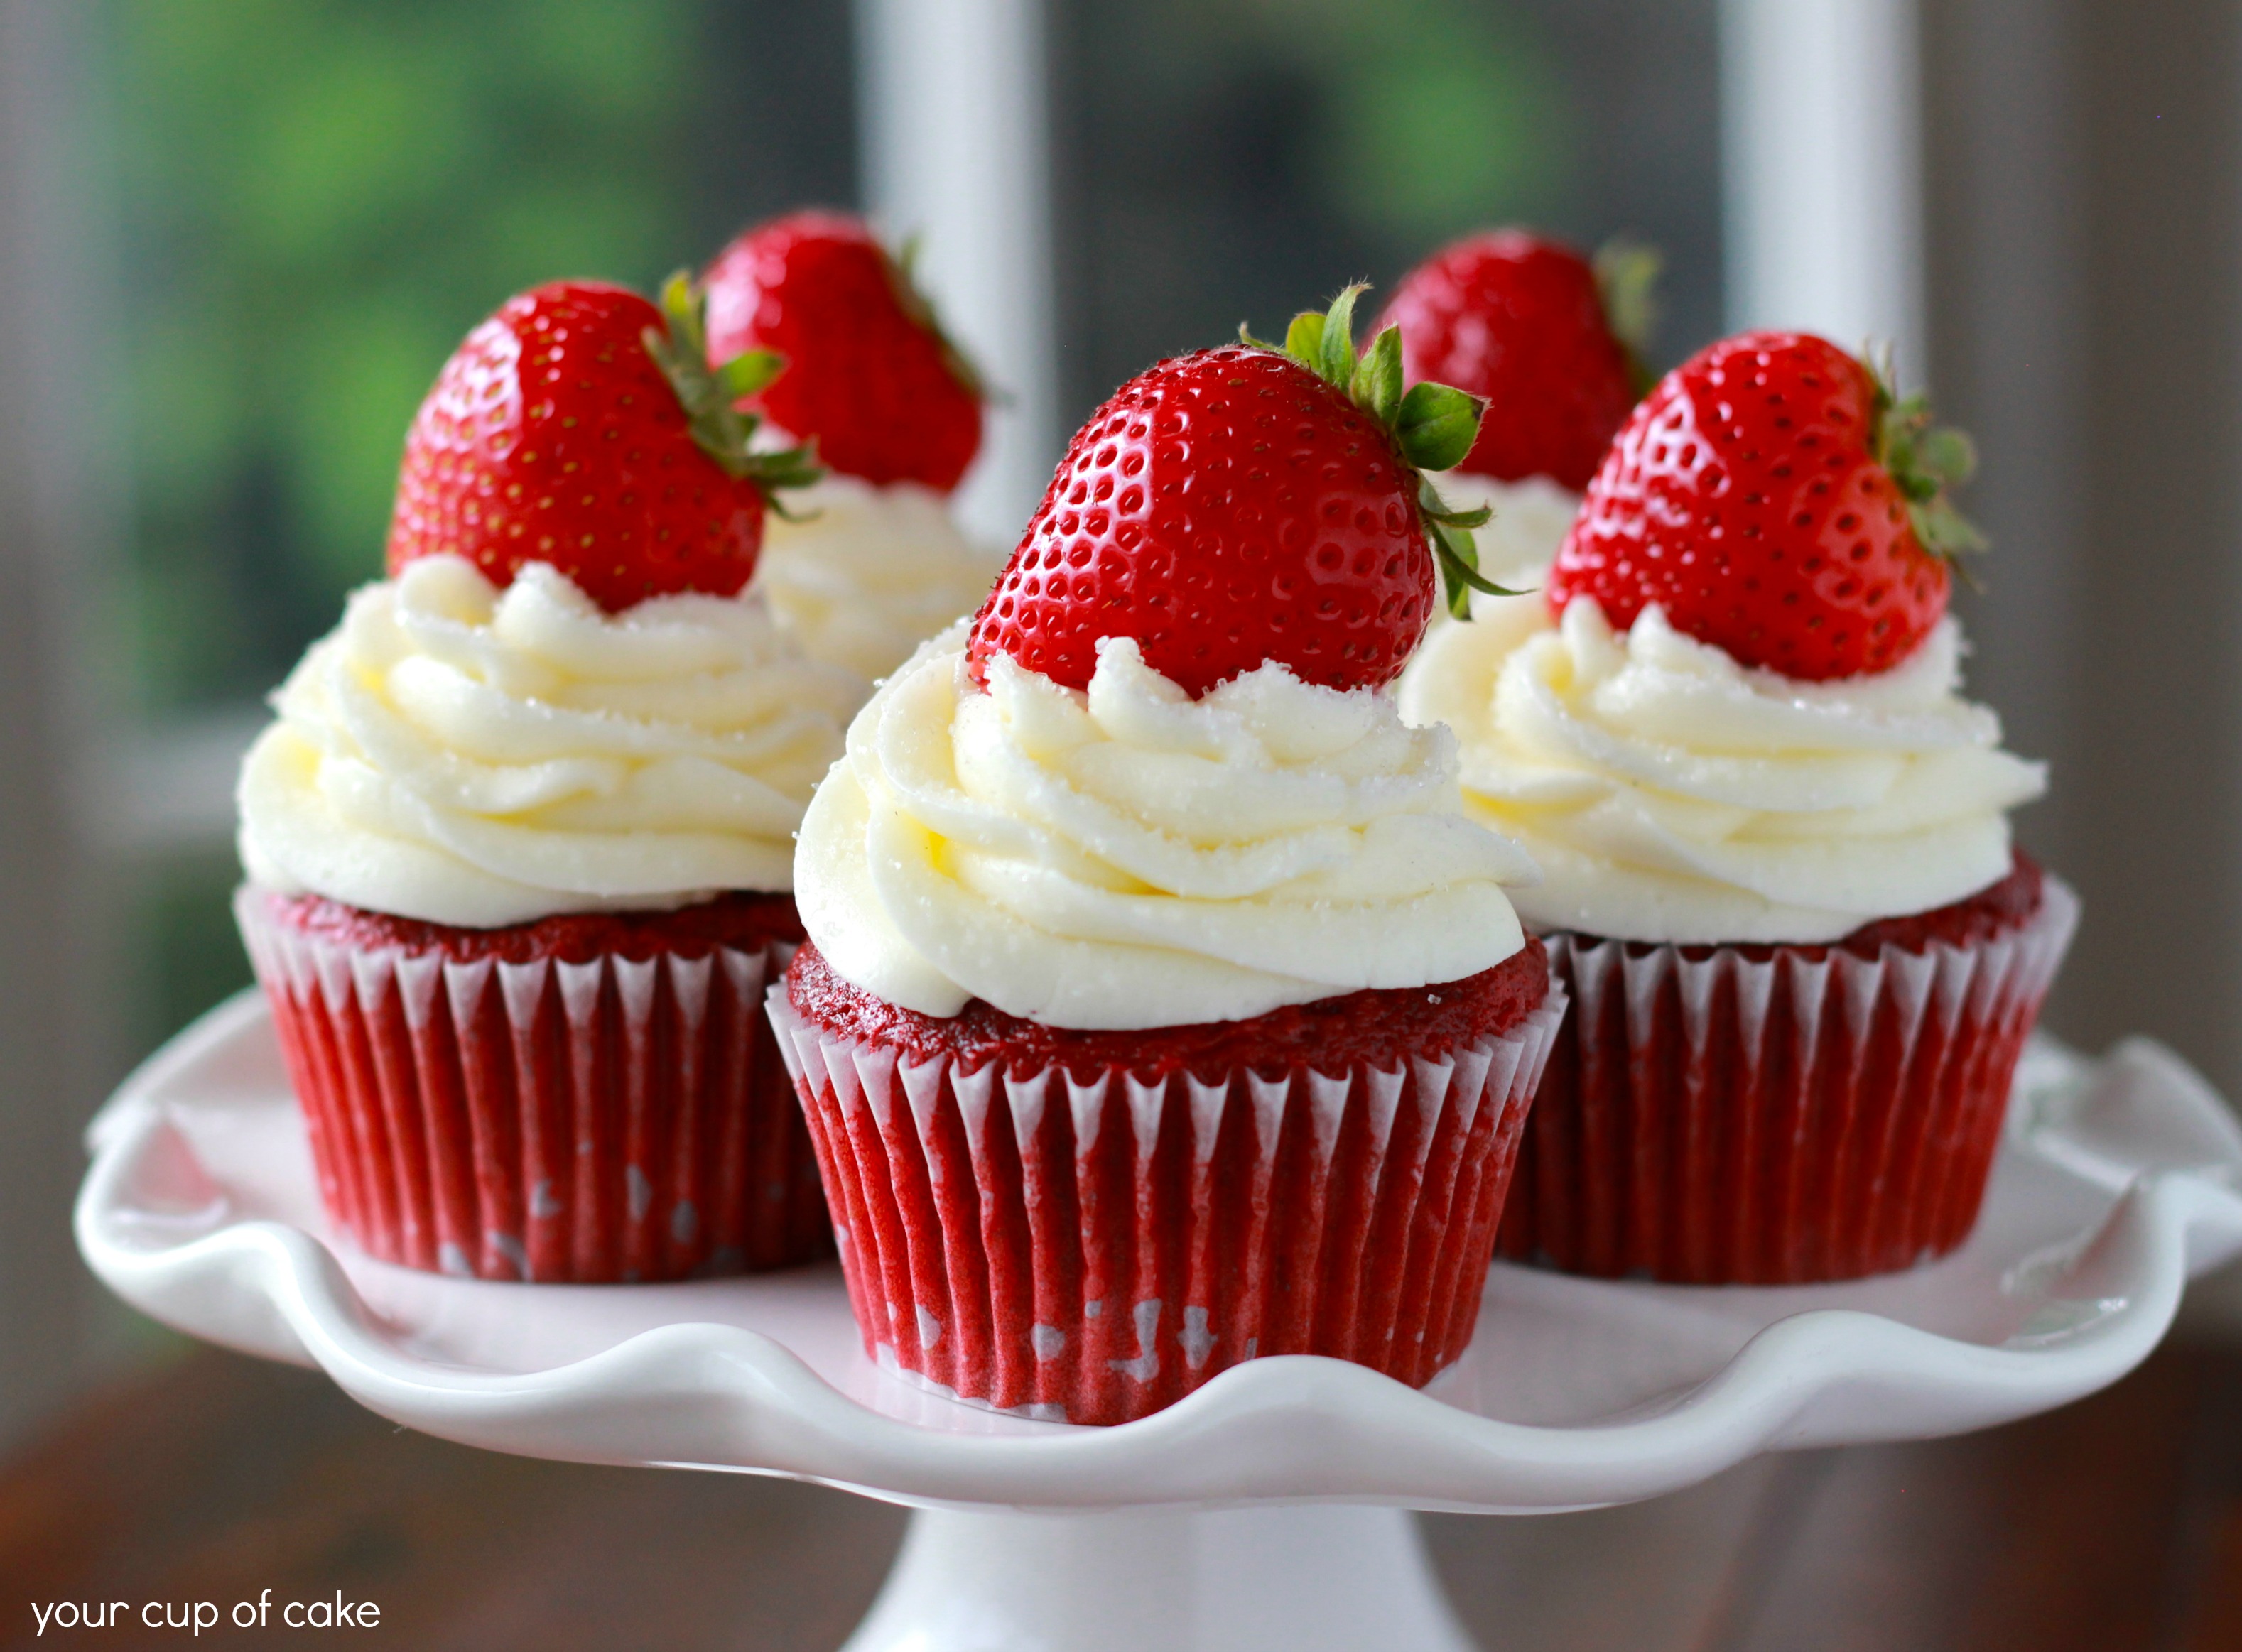 strawberry-red-velvet-cupcakes1.jpg